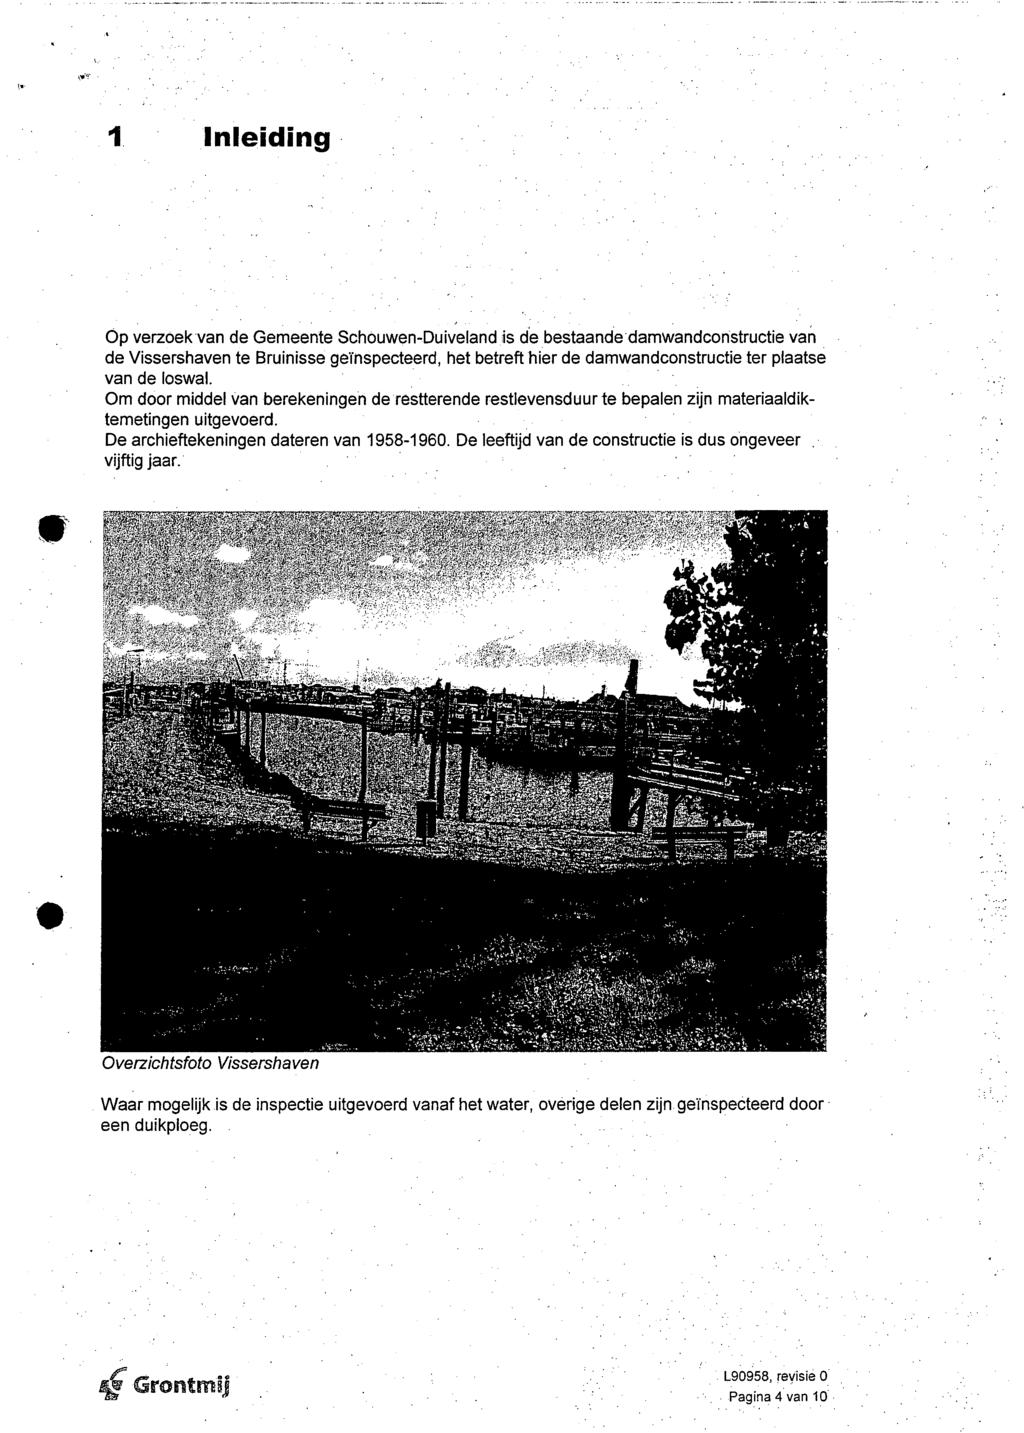 1 Inleiding Op verzoek van de Gemeente Schouwen-Duiveland,is de bestaande damwandconstructie van de te geïnspecteerd, het betreft hier de darnwandconstructie ter plaatse van de loswal.